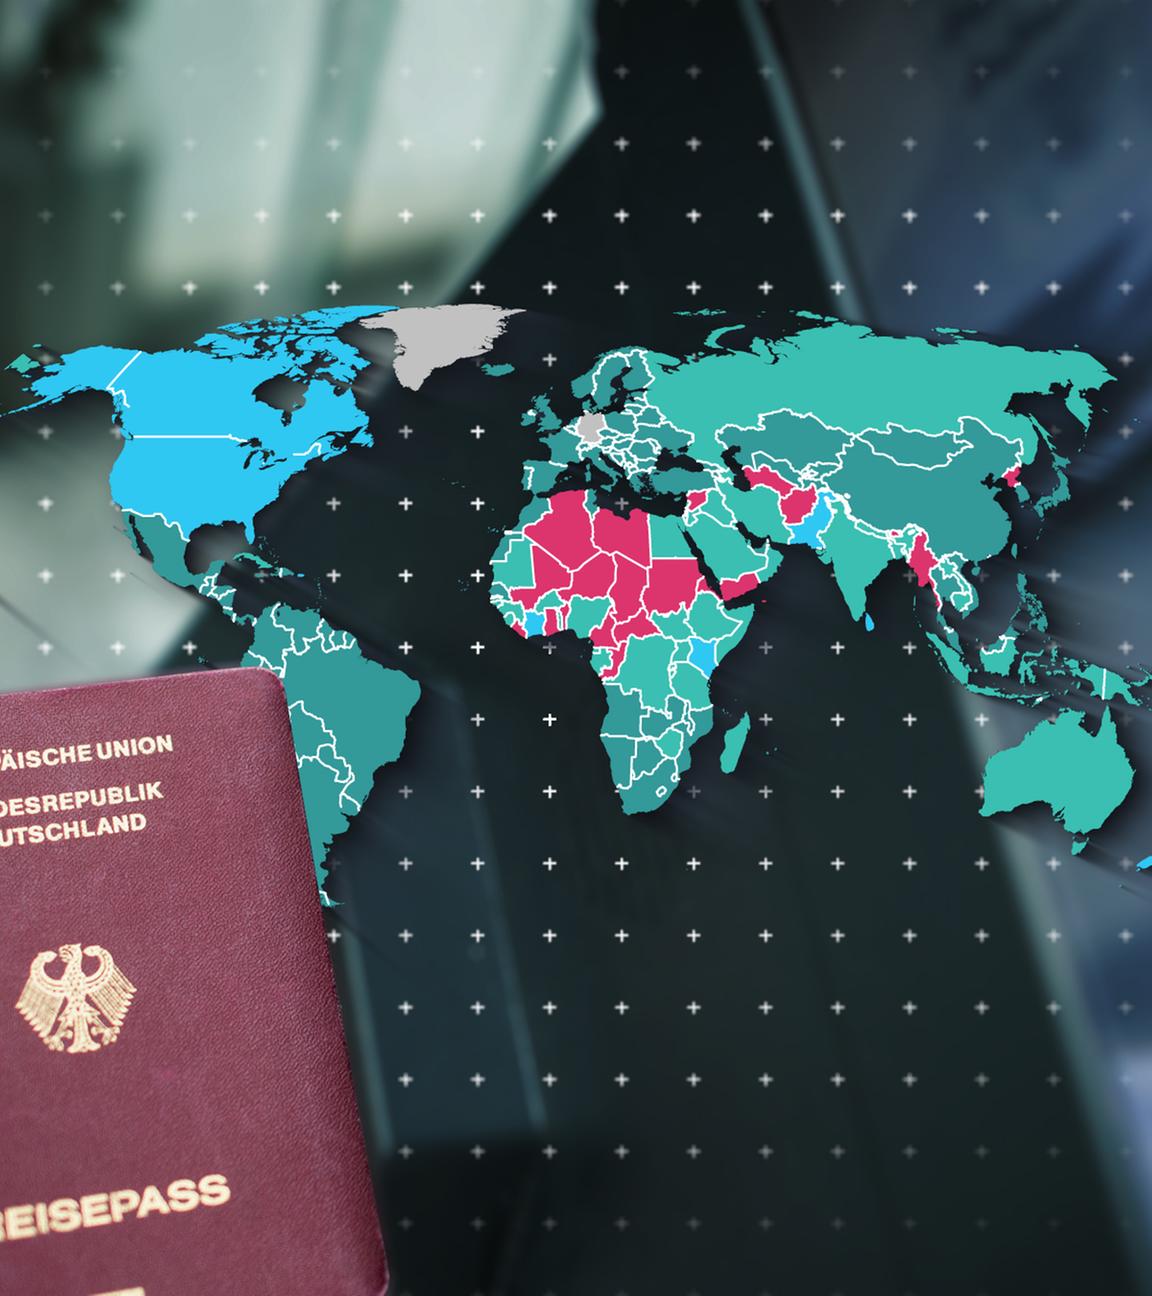 Eine Person hält einen deutschen Reisepass. Im Hintergrund ist eine Weltkarte zu sehen.